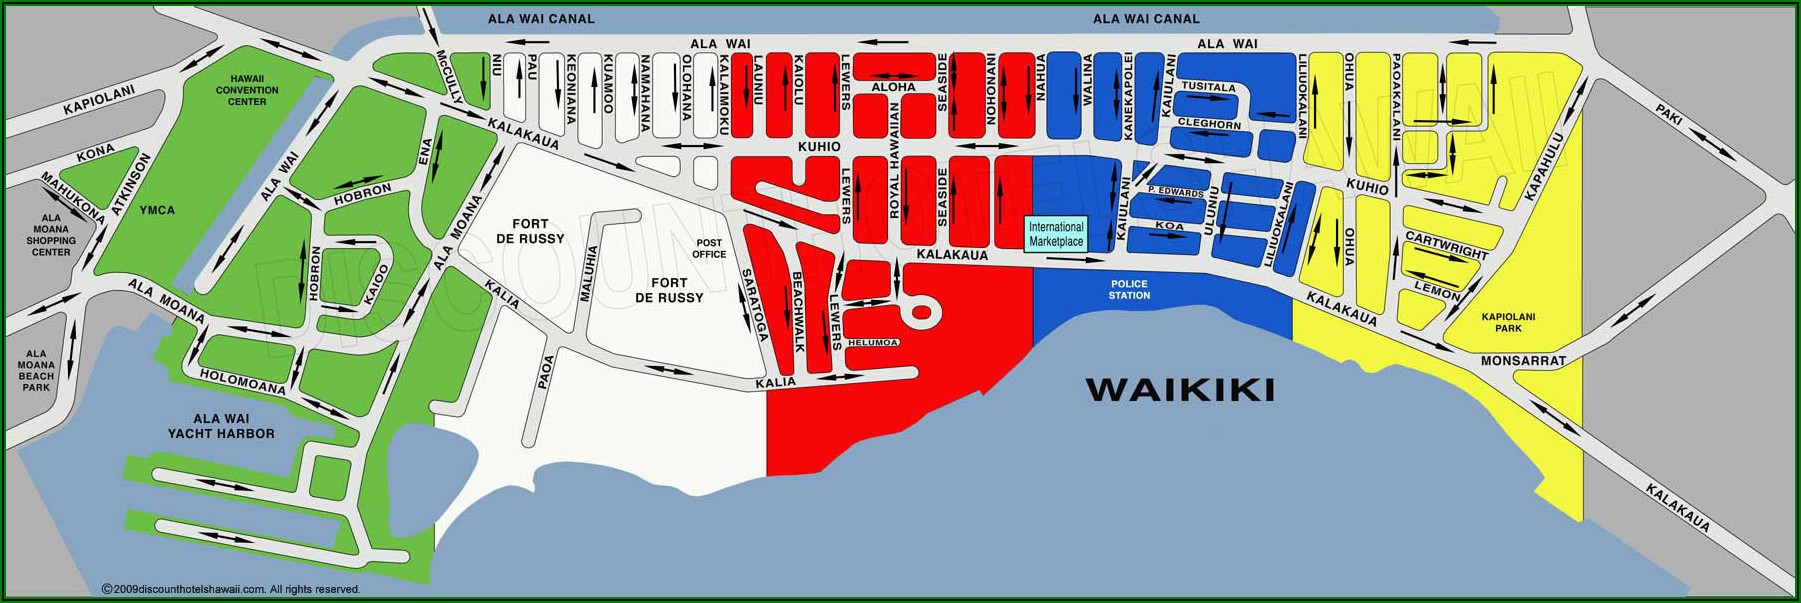 Beachfront Hotels Waikiki Map